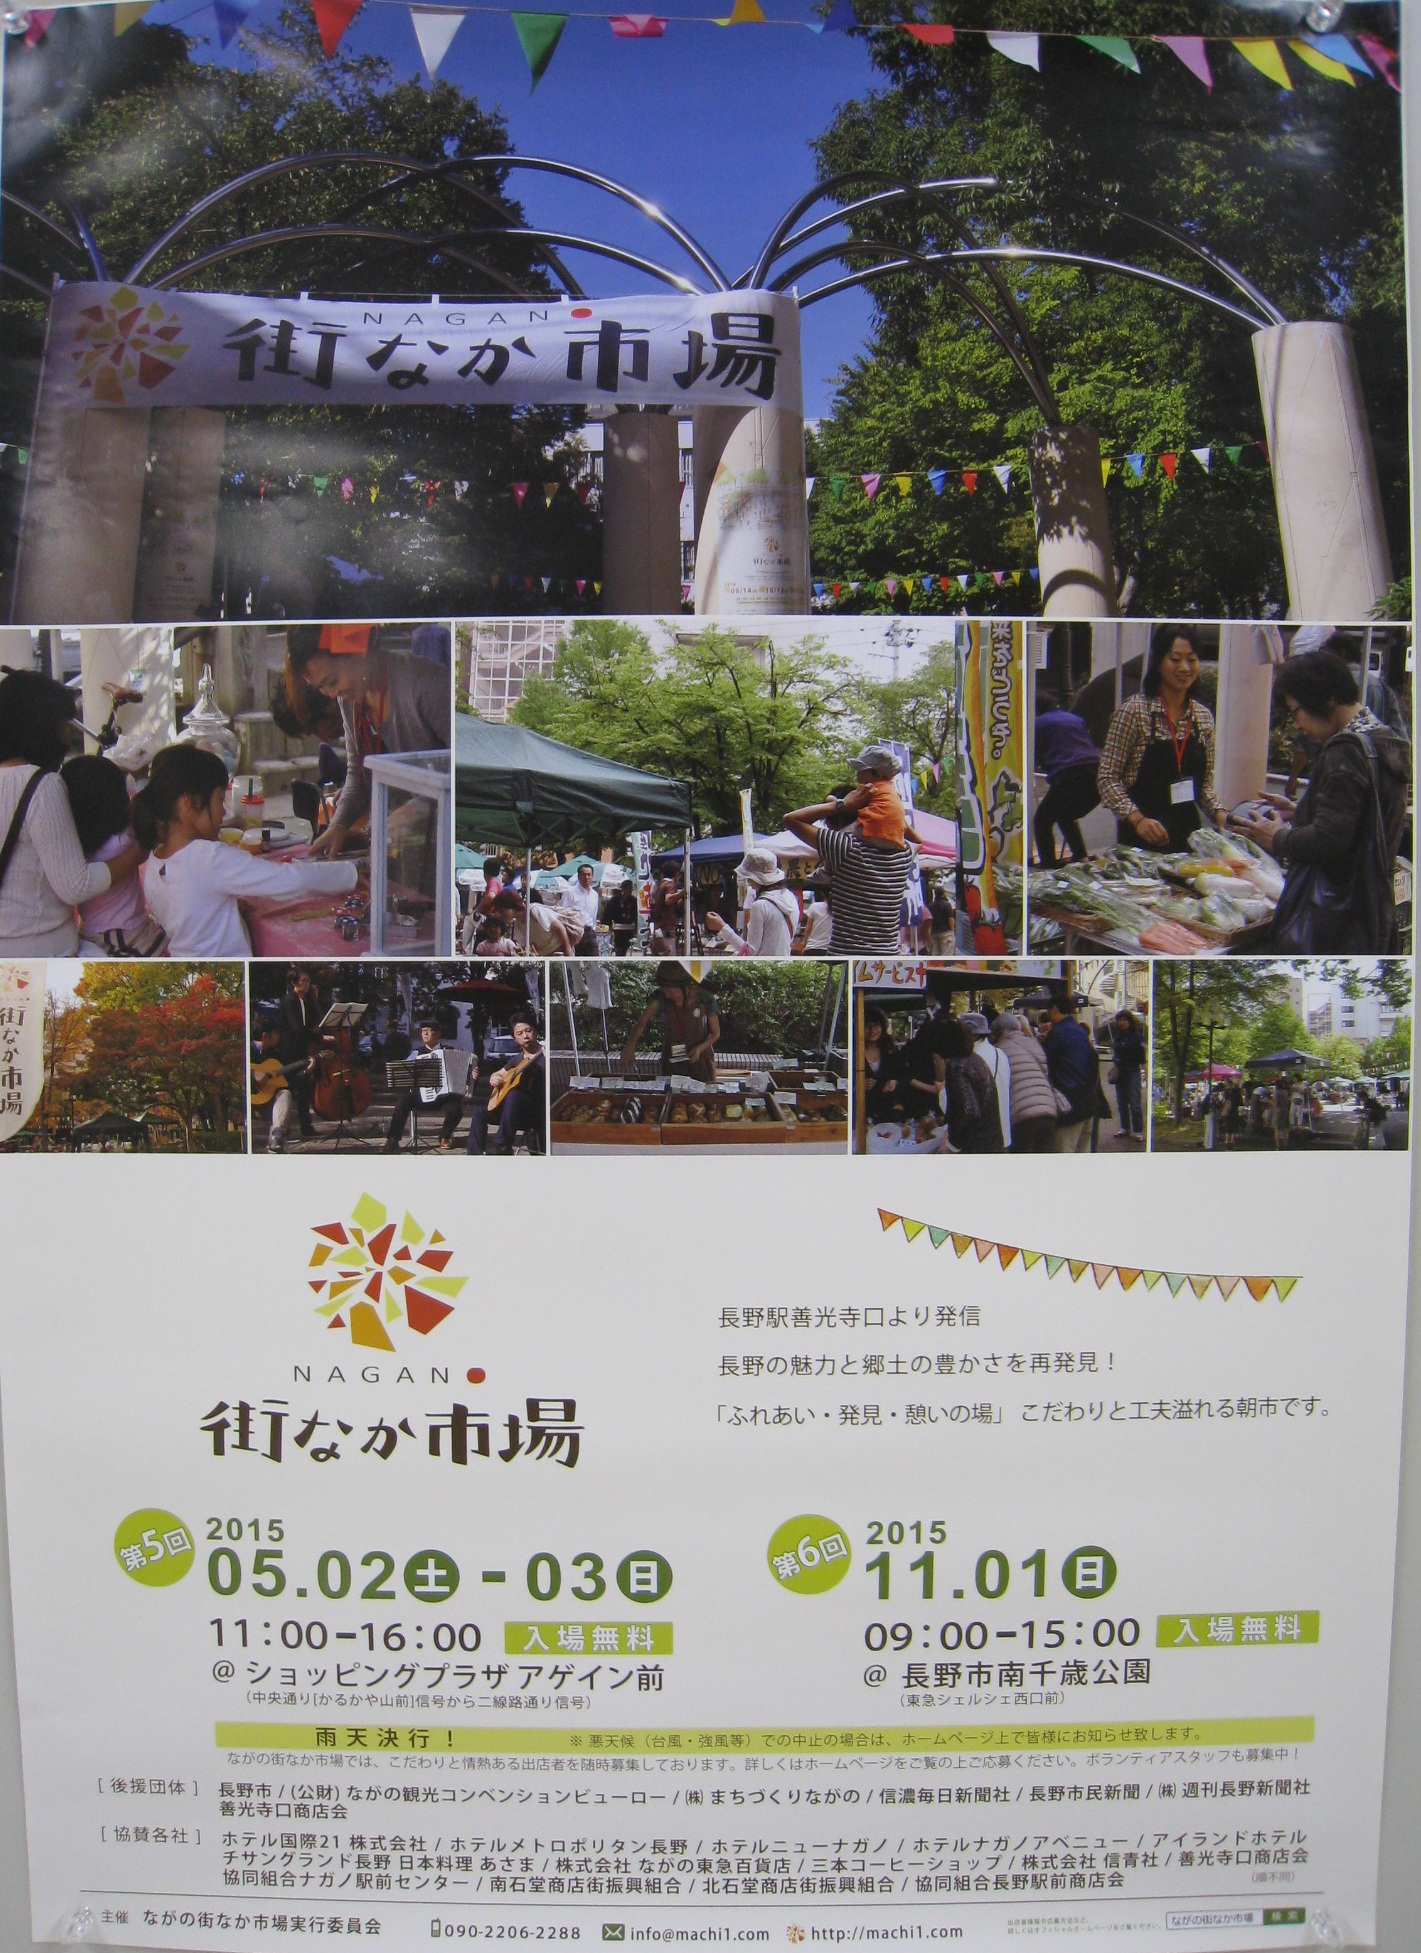 http://nagano-citypromotion.com/daiennichi/images/matinakaiti.jpg